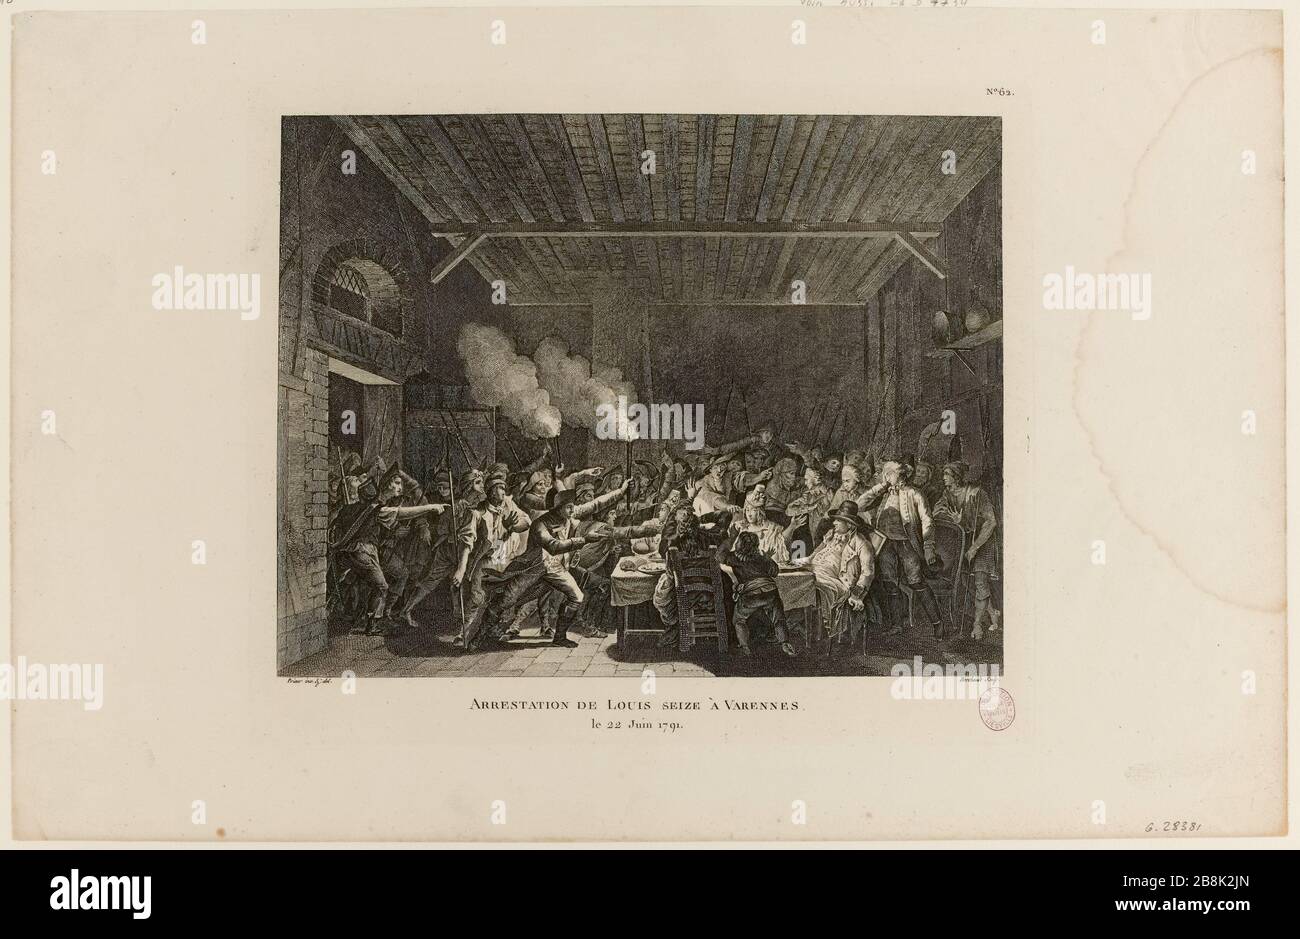 Louis sixteen arrest at Varennes / 22 June 1791 / No. 62. (IT) Stock Photo